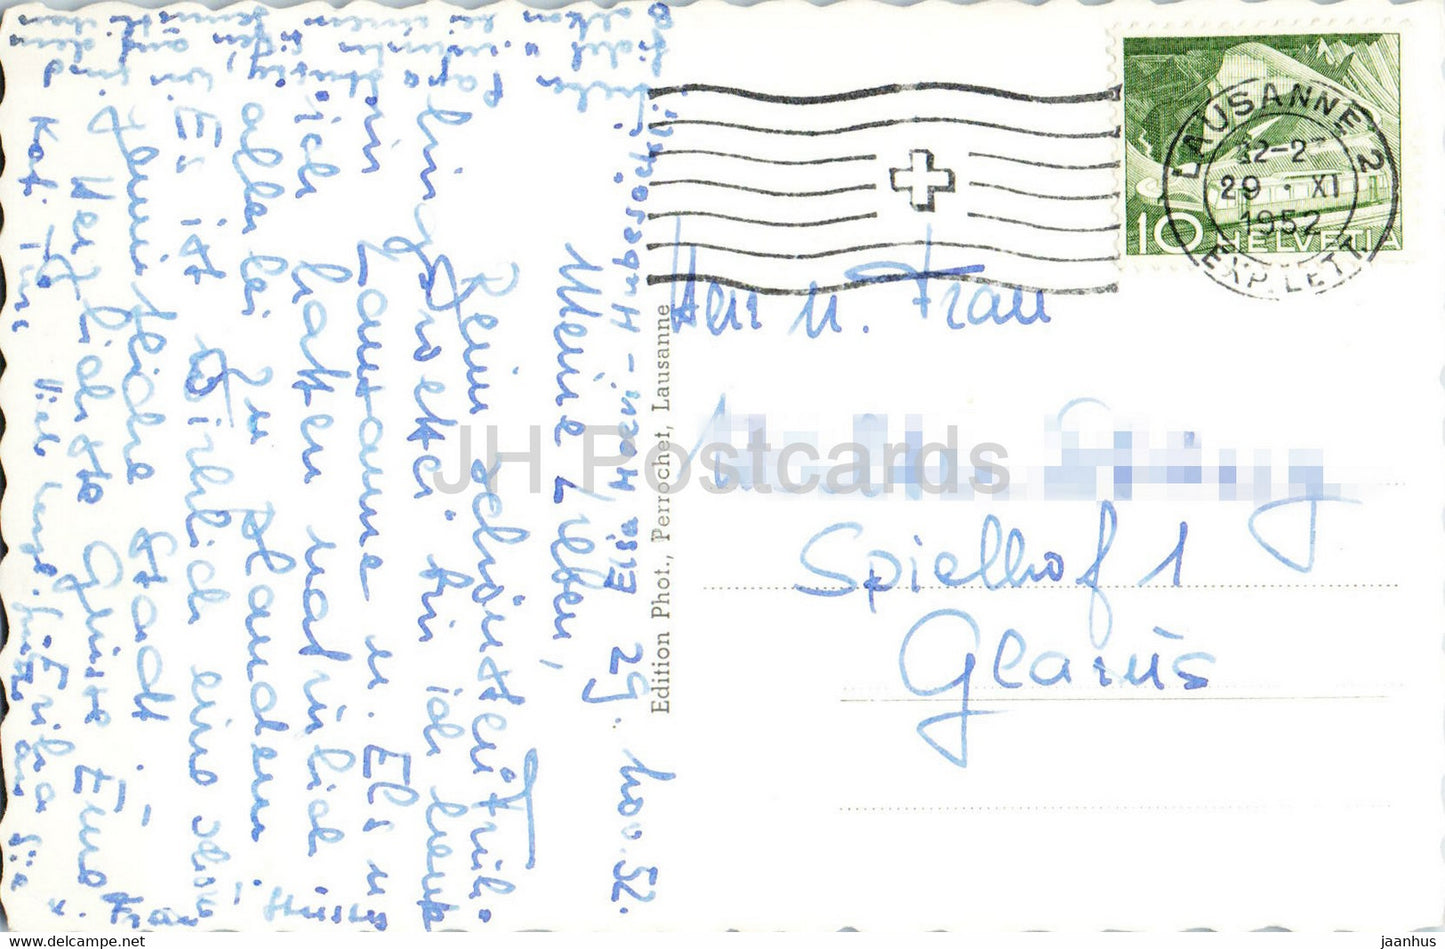 Lausanne et LEs Alpes - 7906 - old postcard - 1941 - Switzerland - used